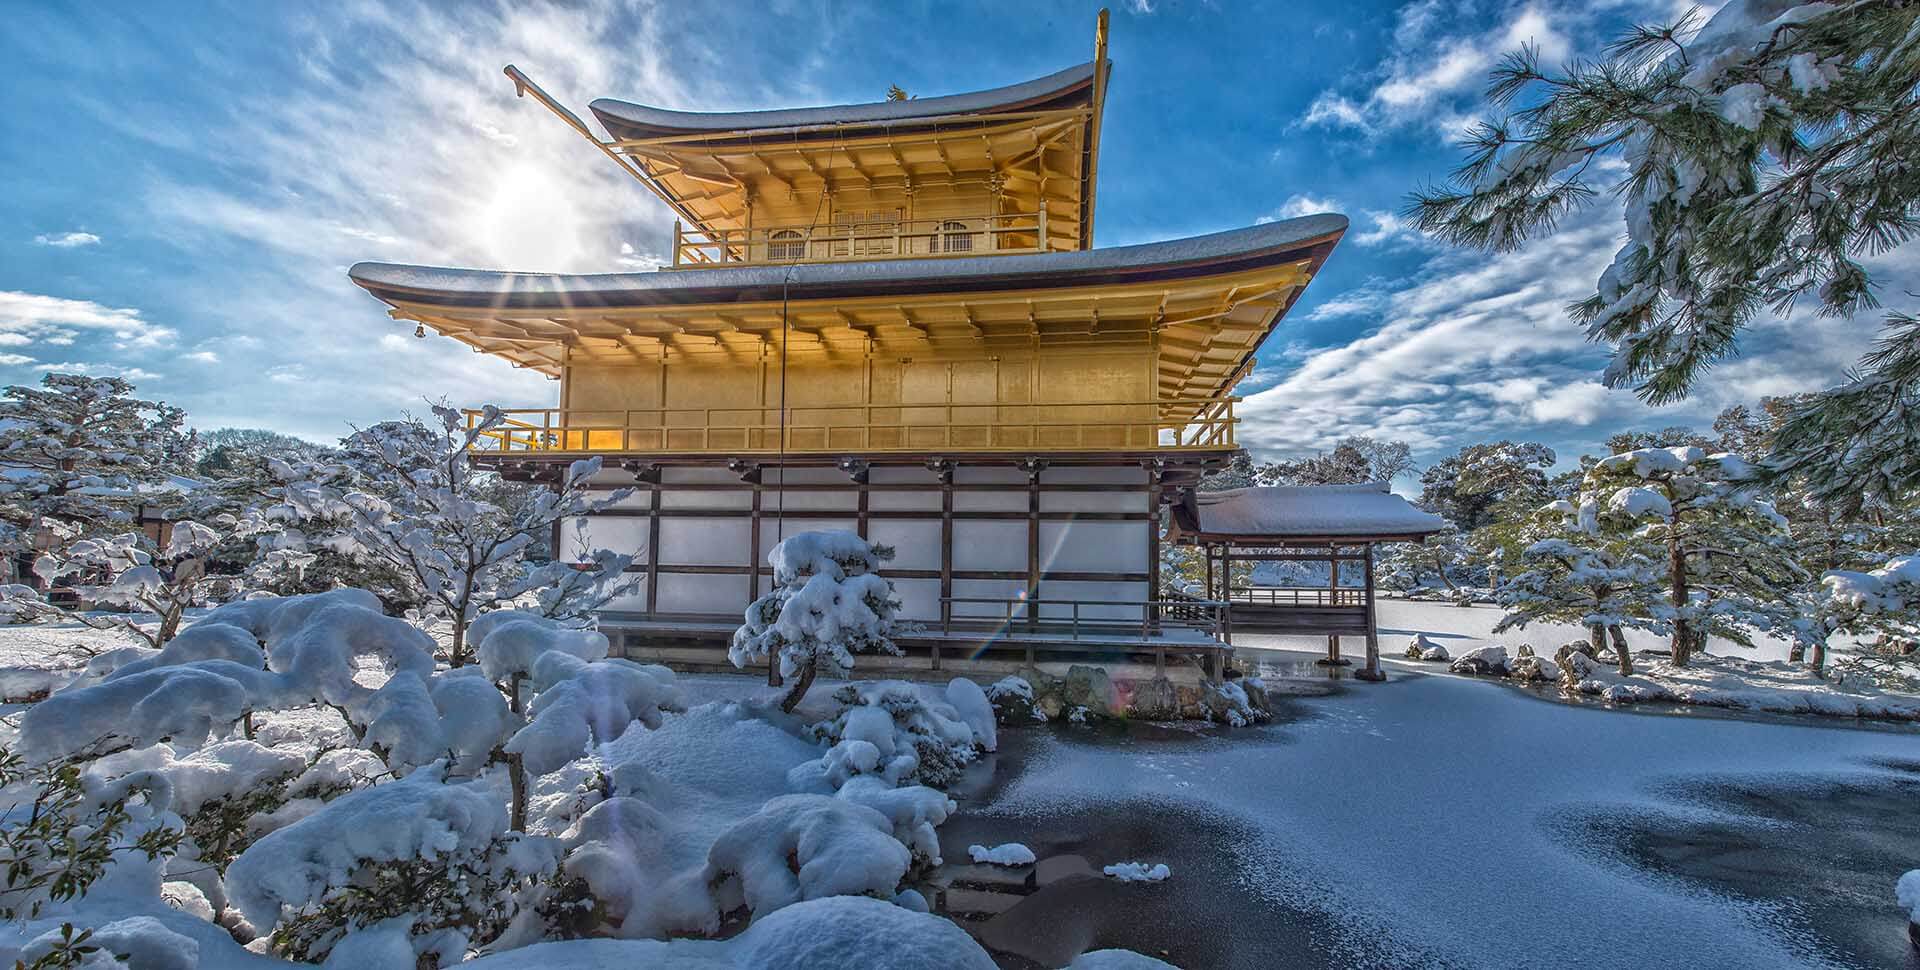 京都の金閣寺の冬景色。冬は-10°C、夏は40°Cにまで達します。